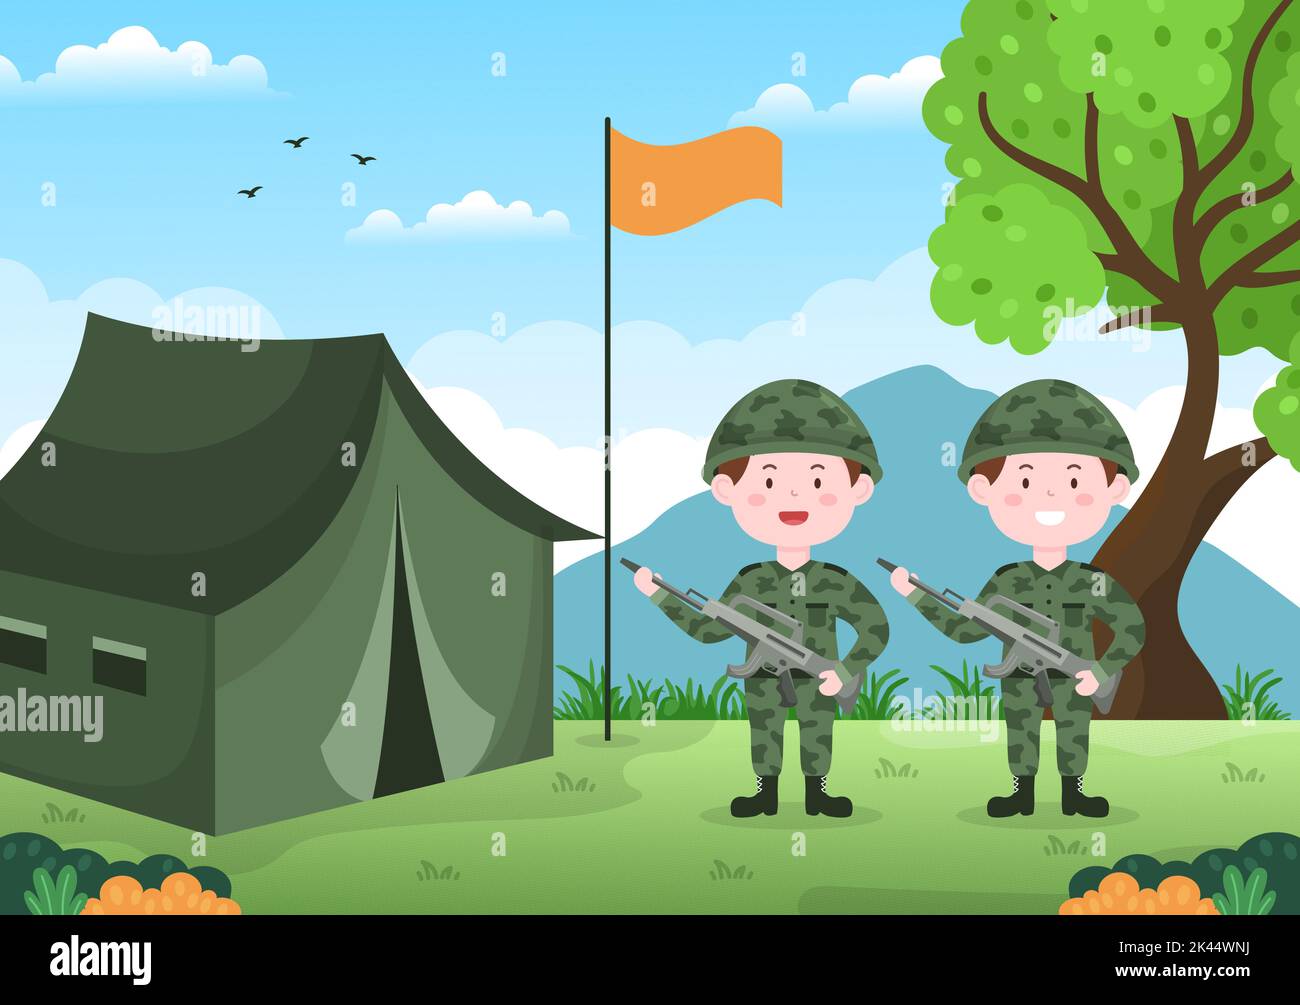 Military Army Force Template Handgezeichnete niedliche Cartoon flache Illustration mit Soldat, Waffe, Panzer oder schwerer Schutzausrüstung Stock Vektor